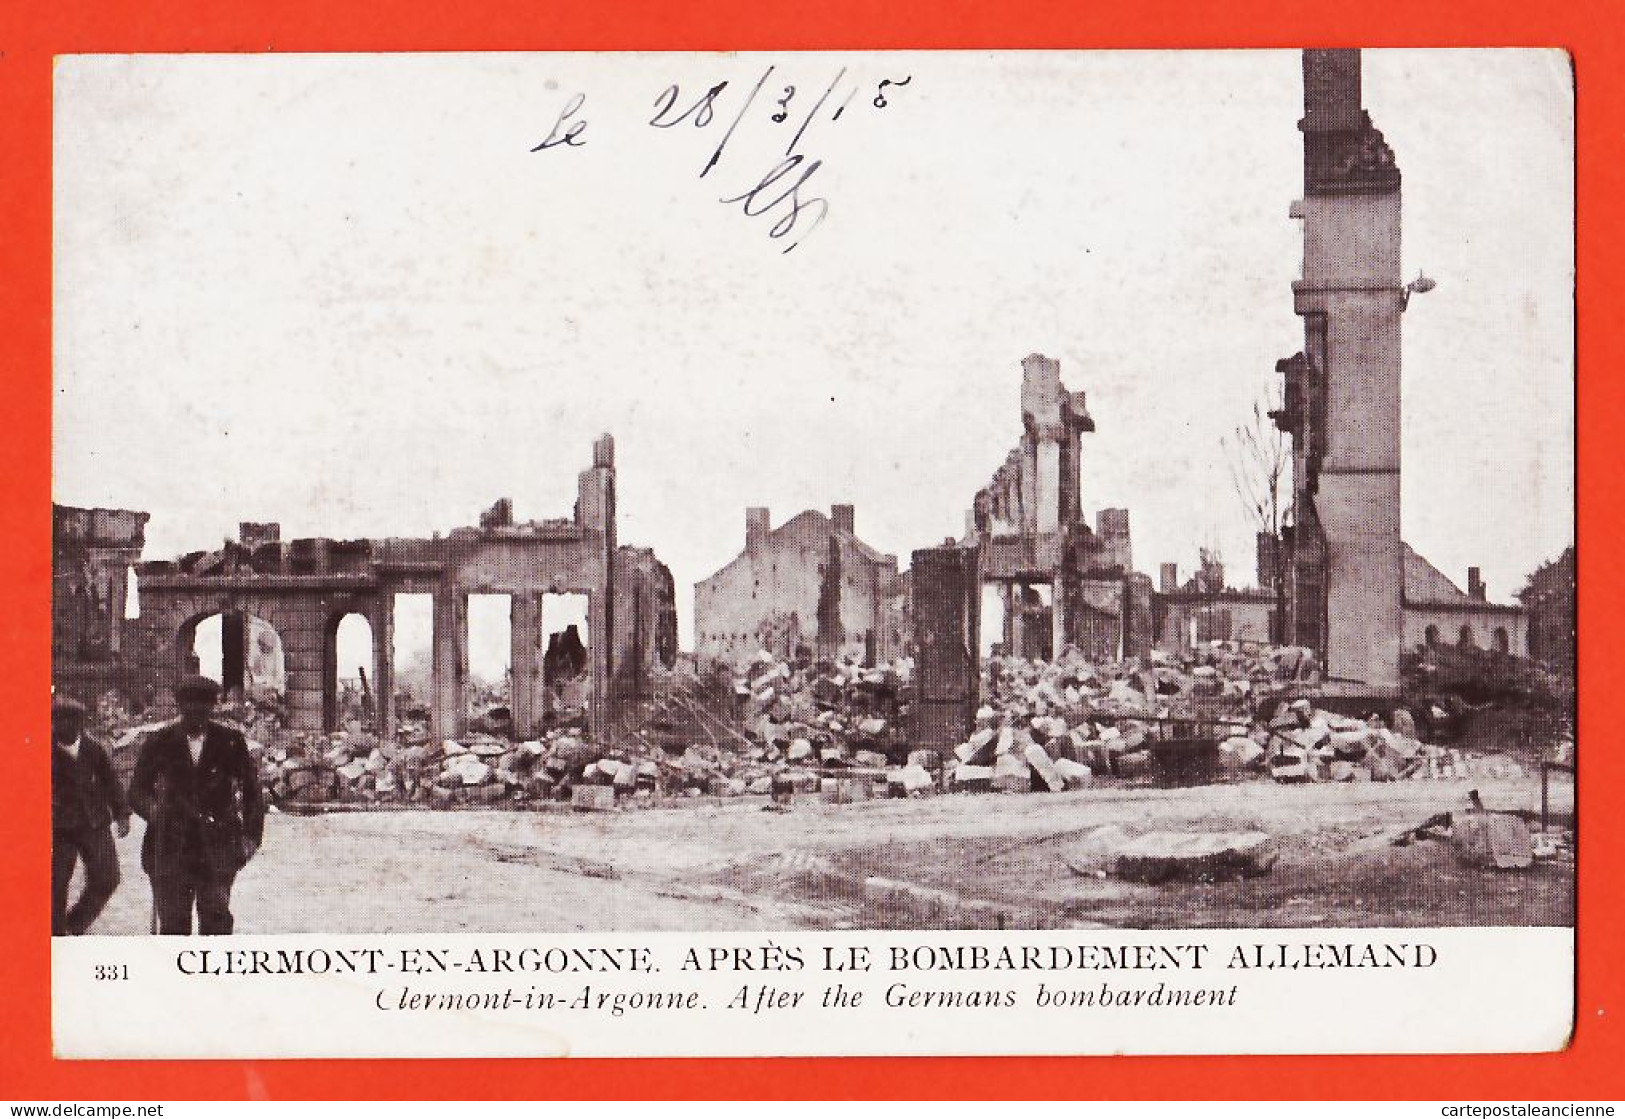 30054 / CLERMONT-en-ARGONNE (55) Guerre 1914-18 Après Bombardement Allemand Germans Bombarment 1915 CpaWW1 Cliché 331 - Clermont En Argonne